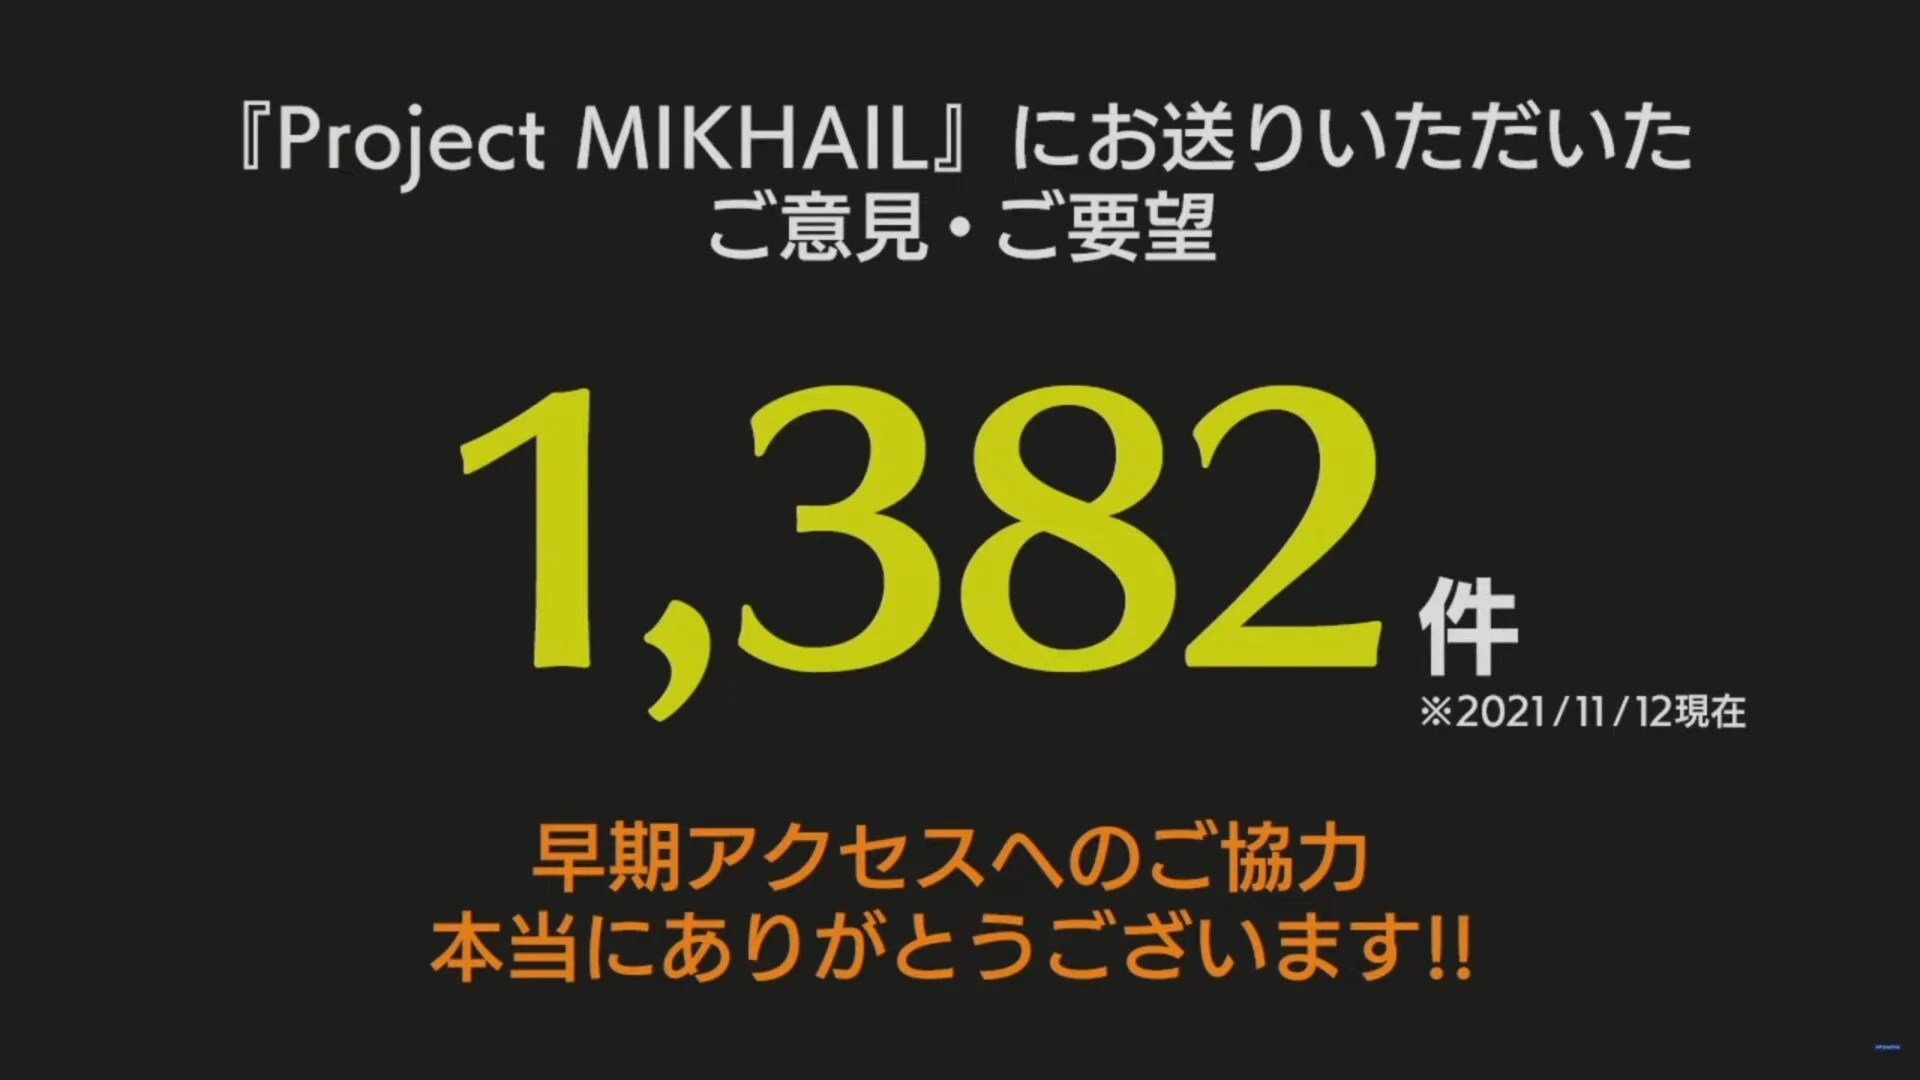 Project Mikhail 1 2